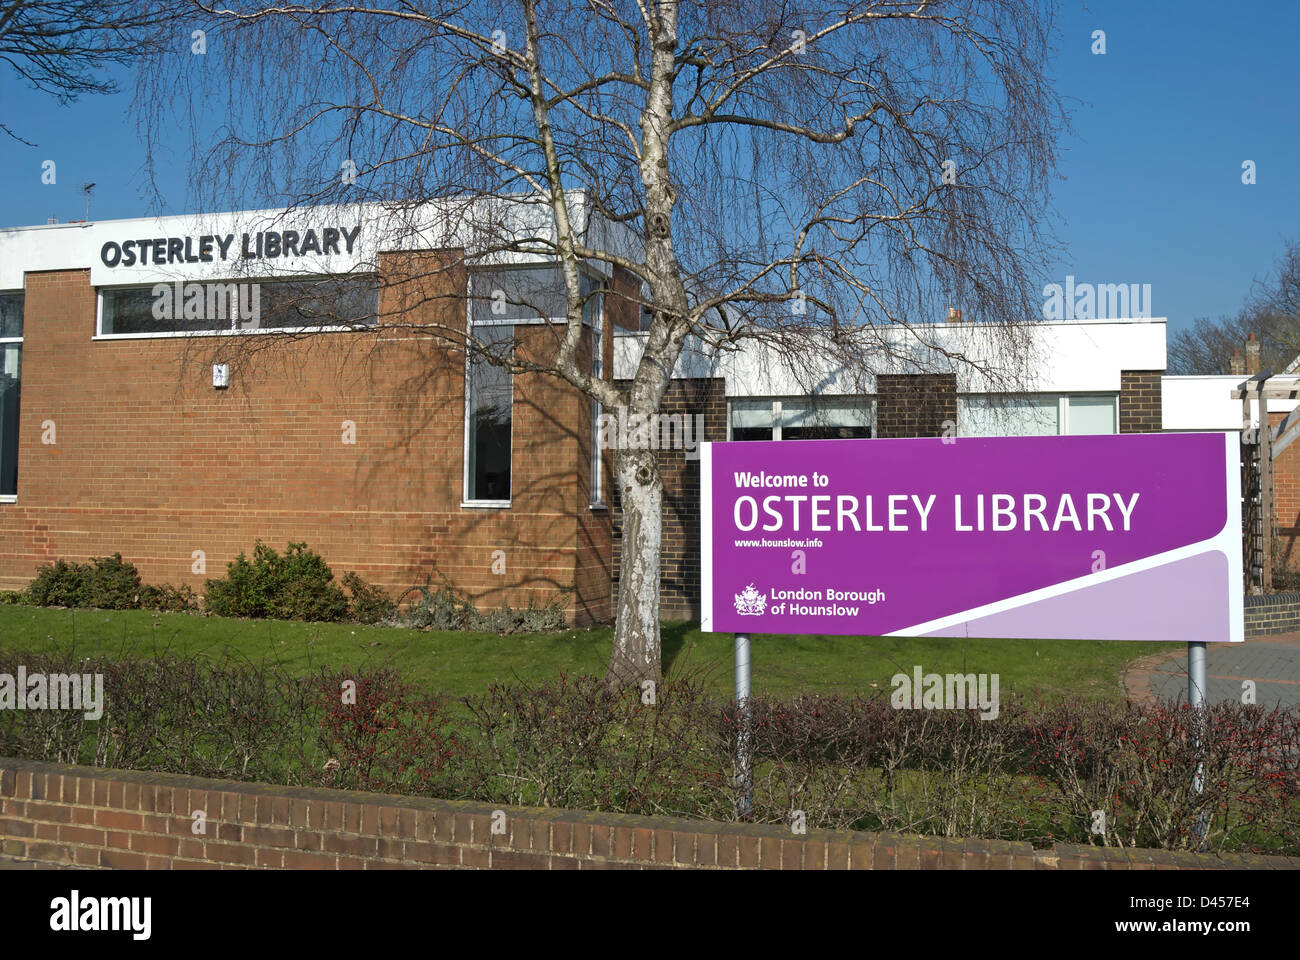 Willkommen Sie bei Osterley Bibliothek Zeichen, mit der Bibliothek auf der Rückseite, Osterley, Middlesex, england Stockfoto